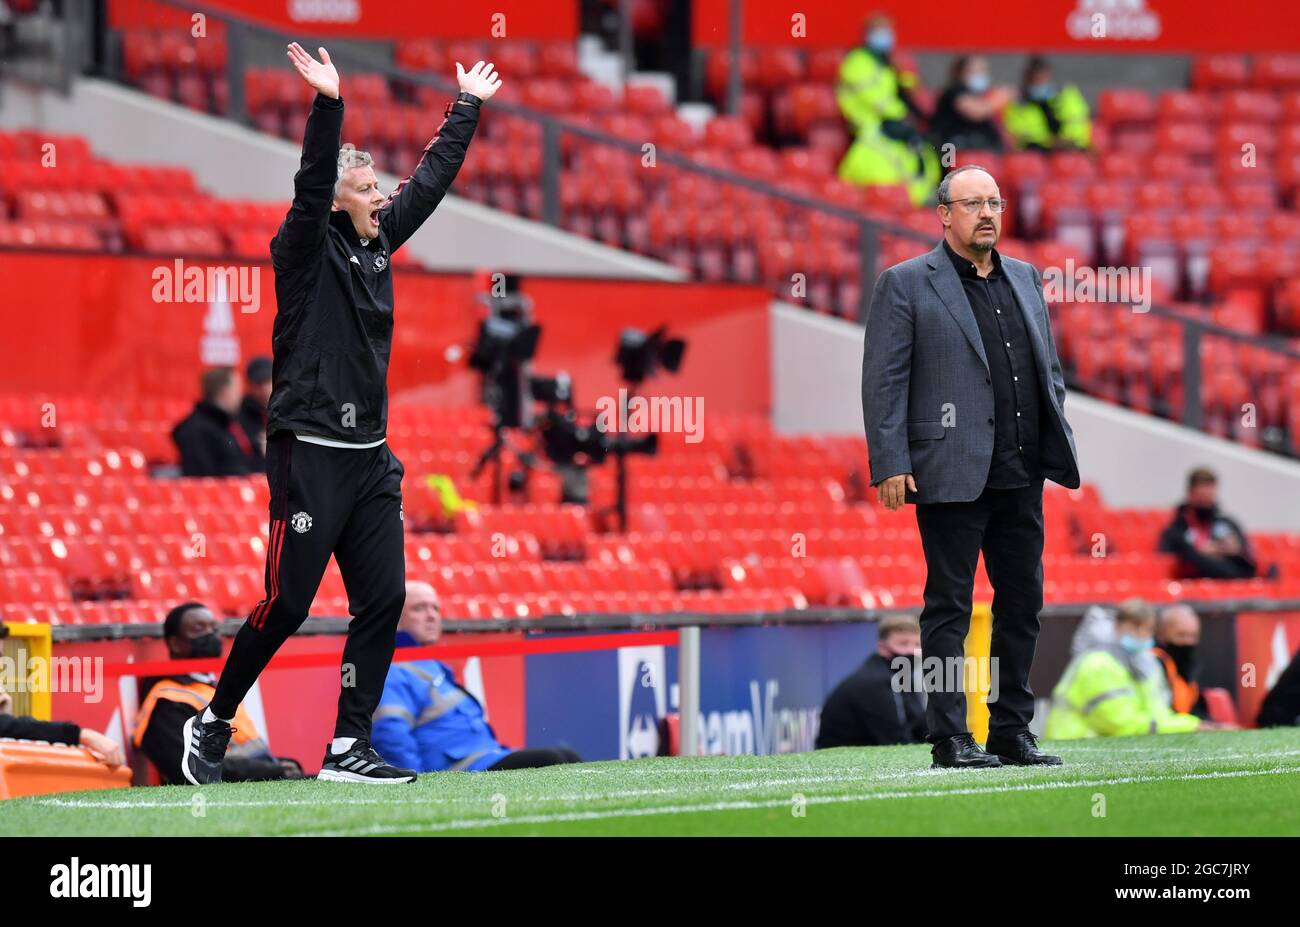 Rafael Benitez, manager di Everton (a destra), accanto al manager del Manchester United Ole Gunnar Solskjaer durante la partita di pre-stagione a Old Trafford, Manchester. Data immagine: Sabato 7 agosto 2021. Foto Stock